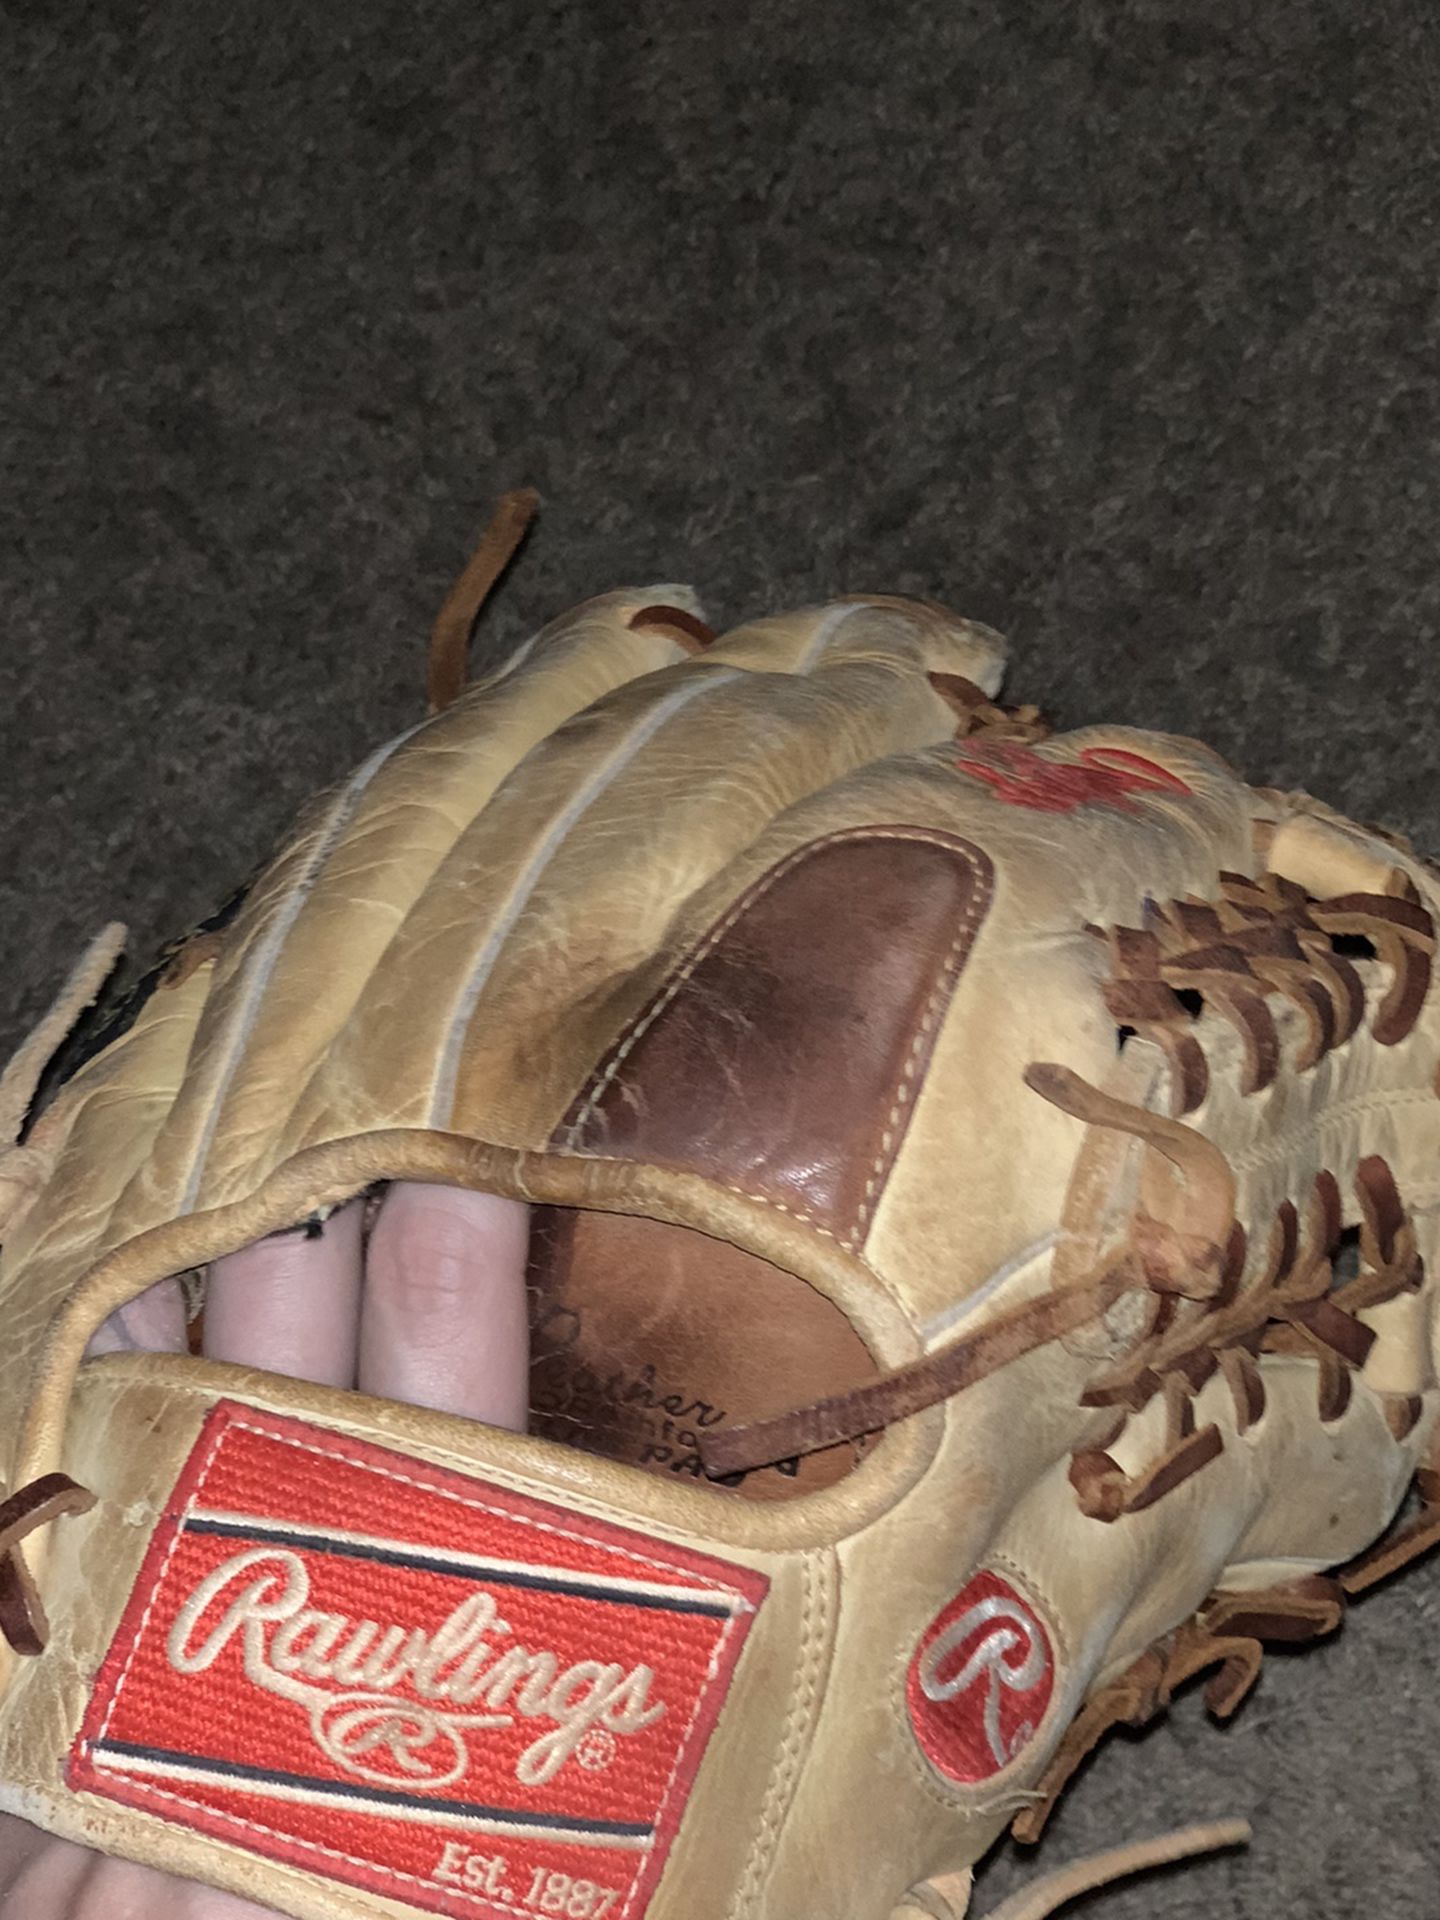 Rawlings Gamer Baseball Glove 11 1/2 Inch